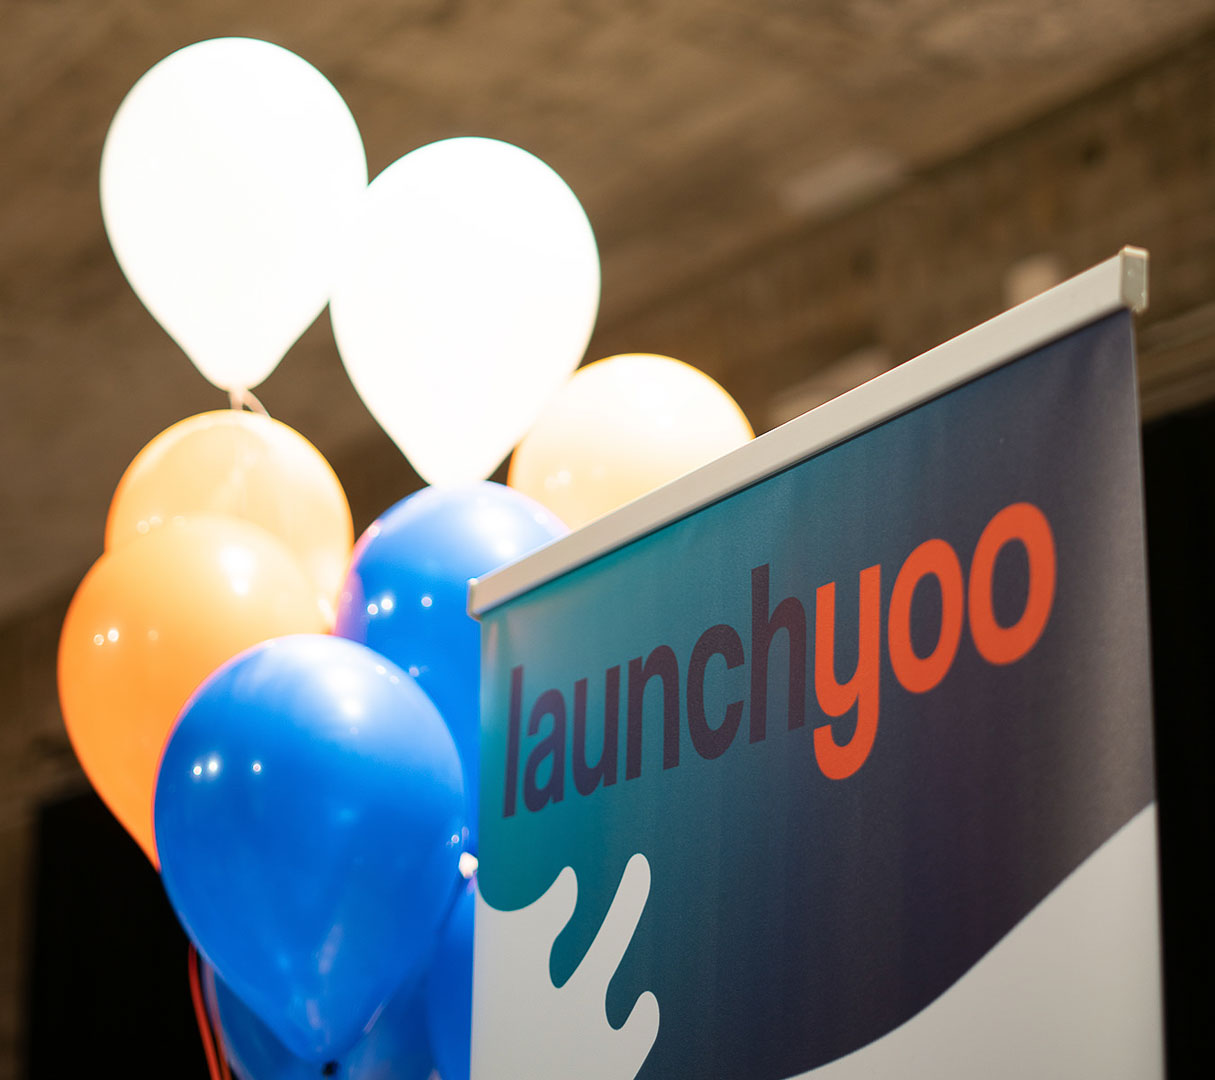 Launchyoo en MeltinLab, entre expertos y startups